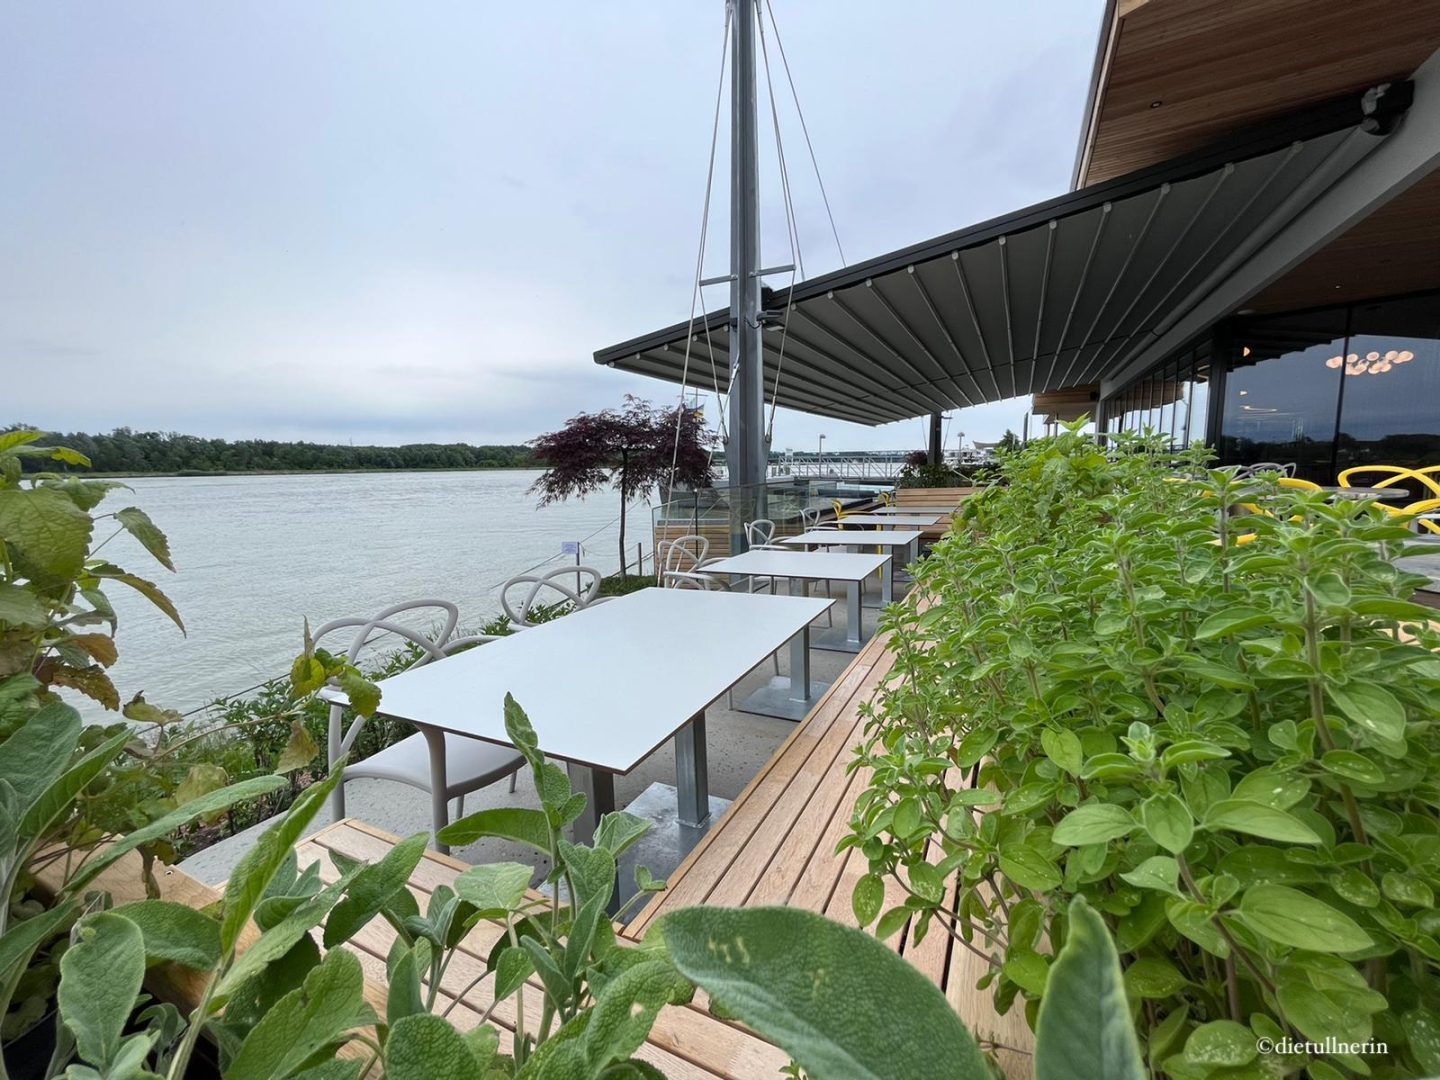 Blick auf eine der Terrassen des Restaurants Süddeck in Tulln, direkt am Ufer der Donau